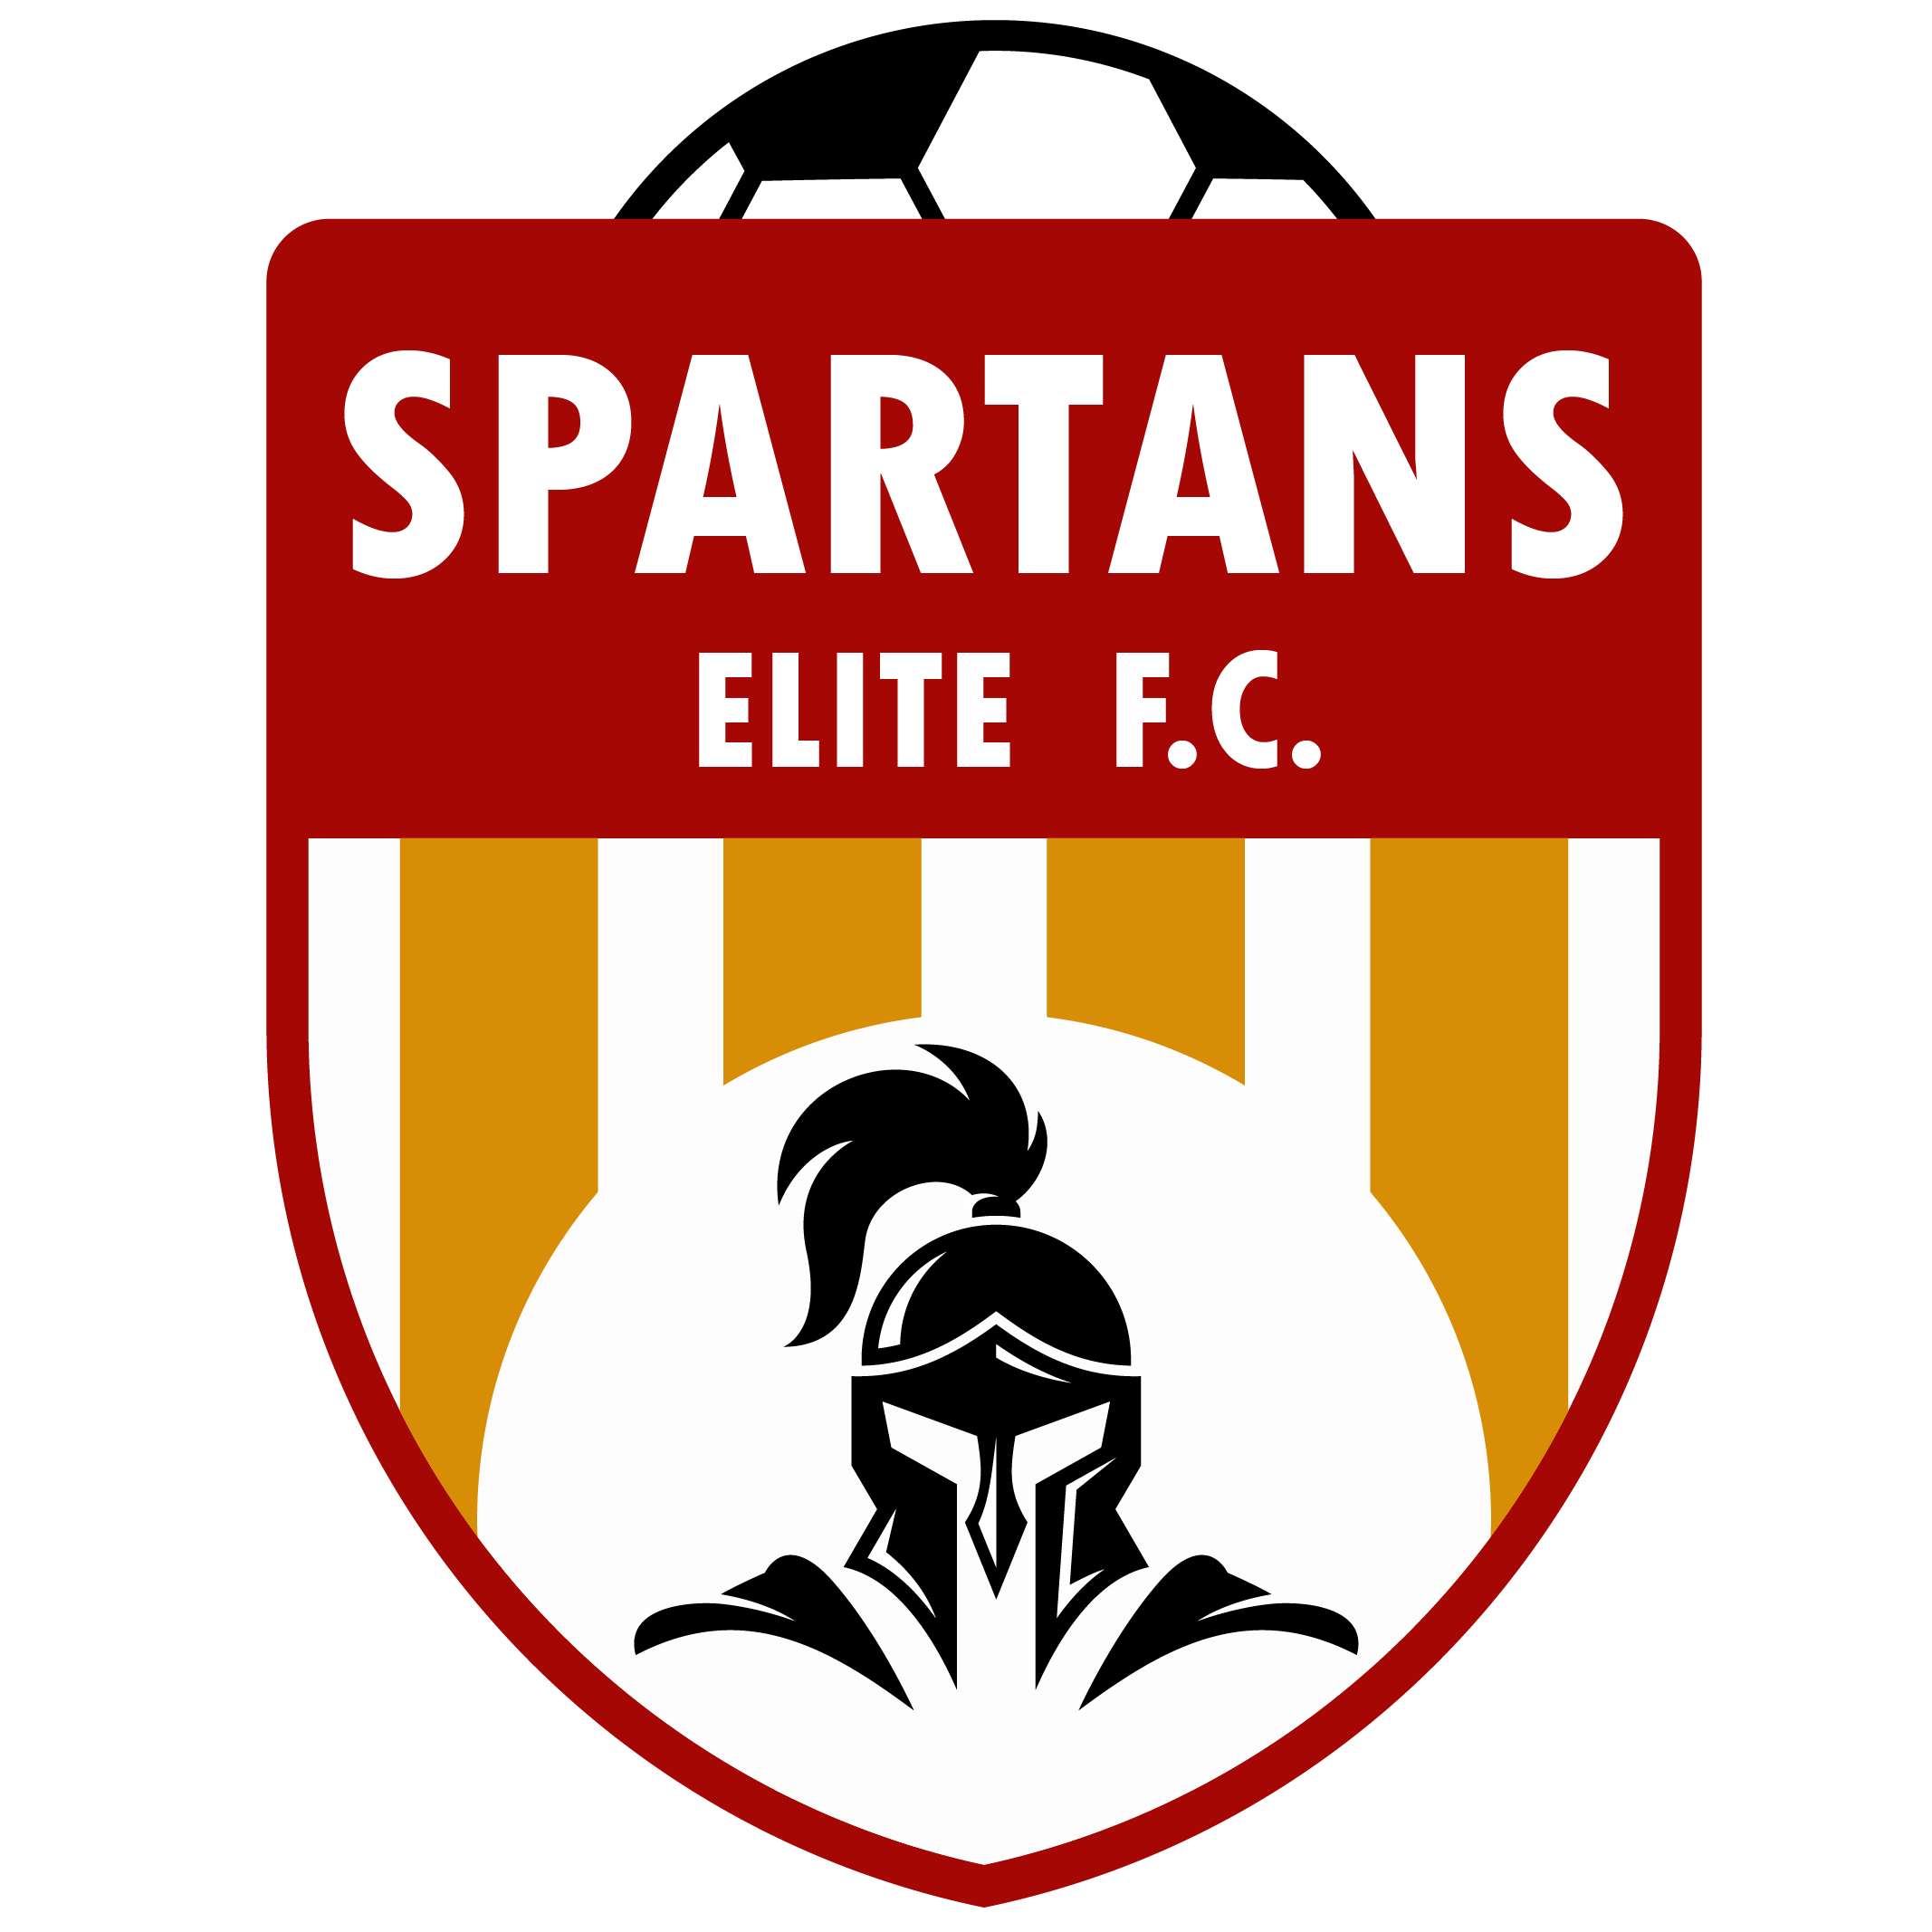 Spartans Elite F.C.